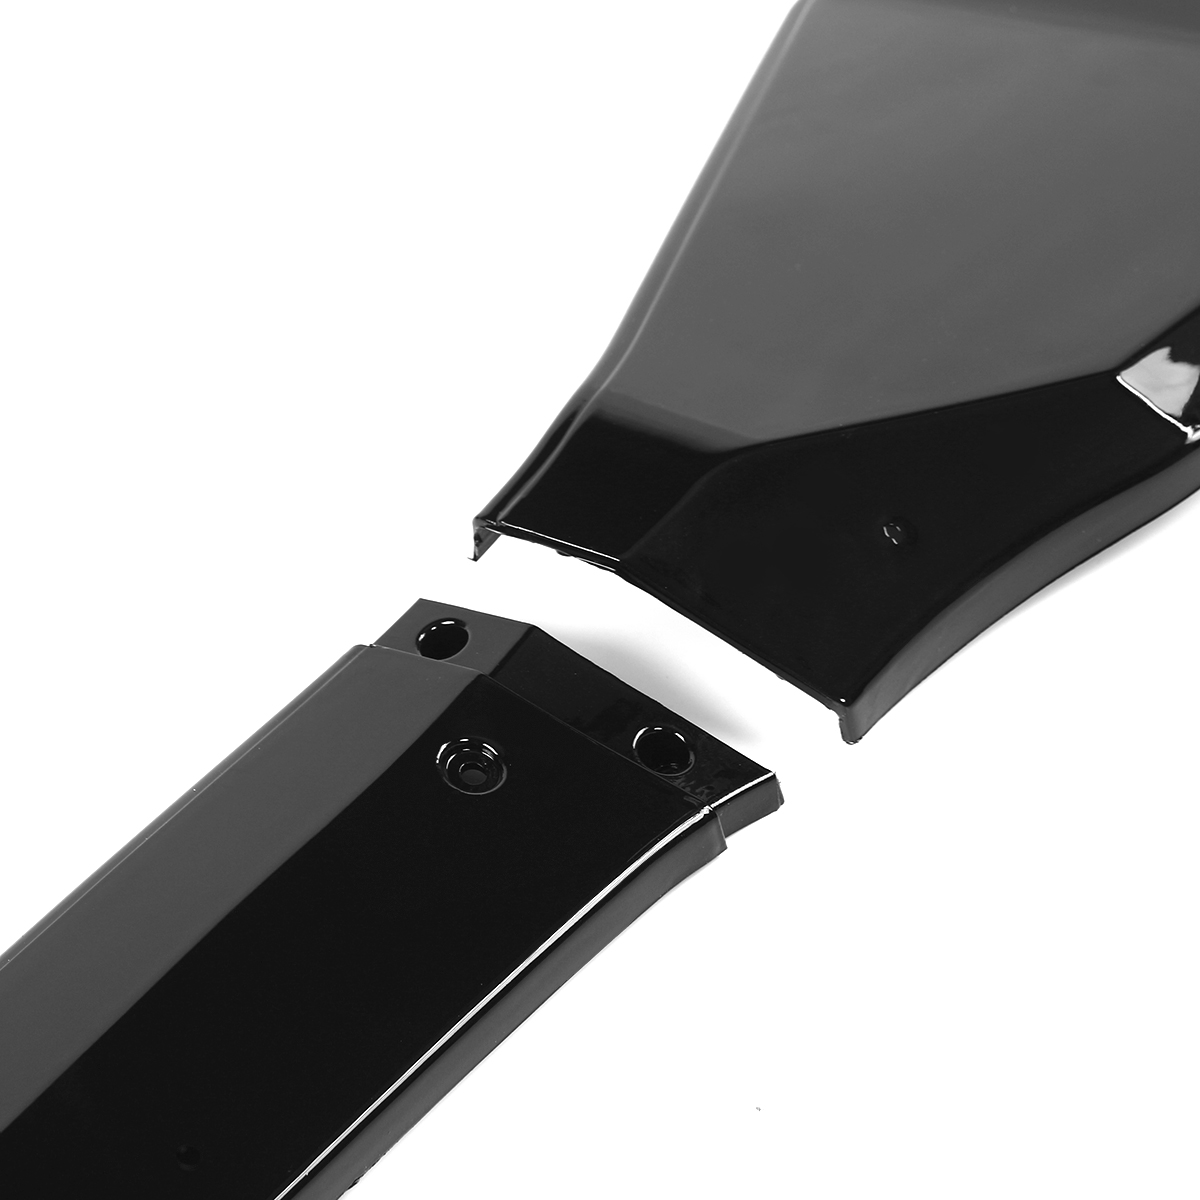 4PCS Glossy Black Front Bumper Lip Body Kit Spoiler Splitter for BMW G01 X3 G02 X4 2018-2020